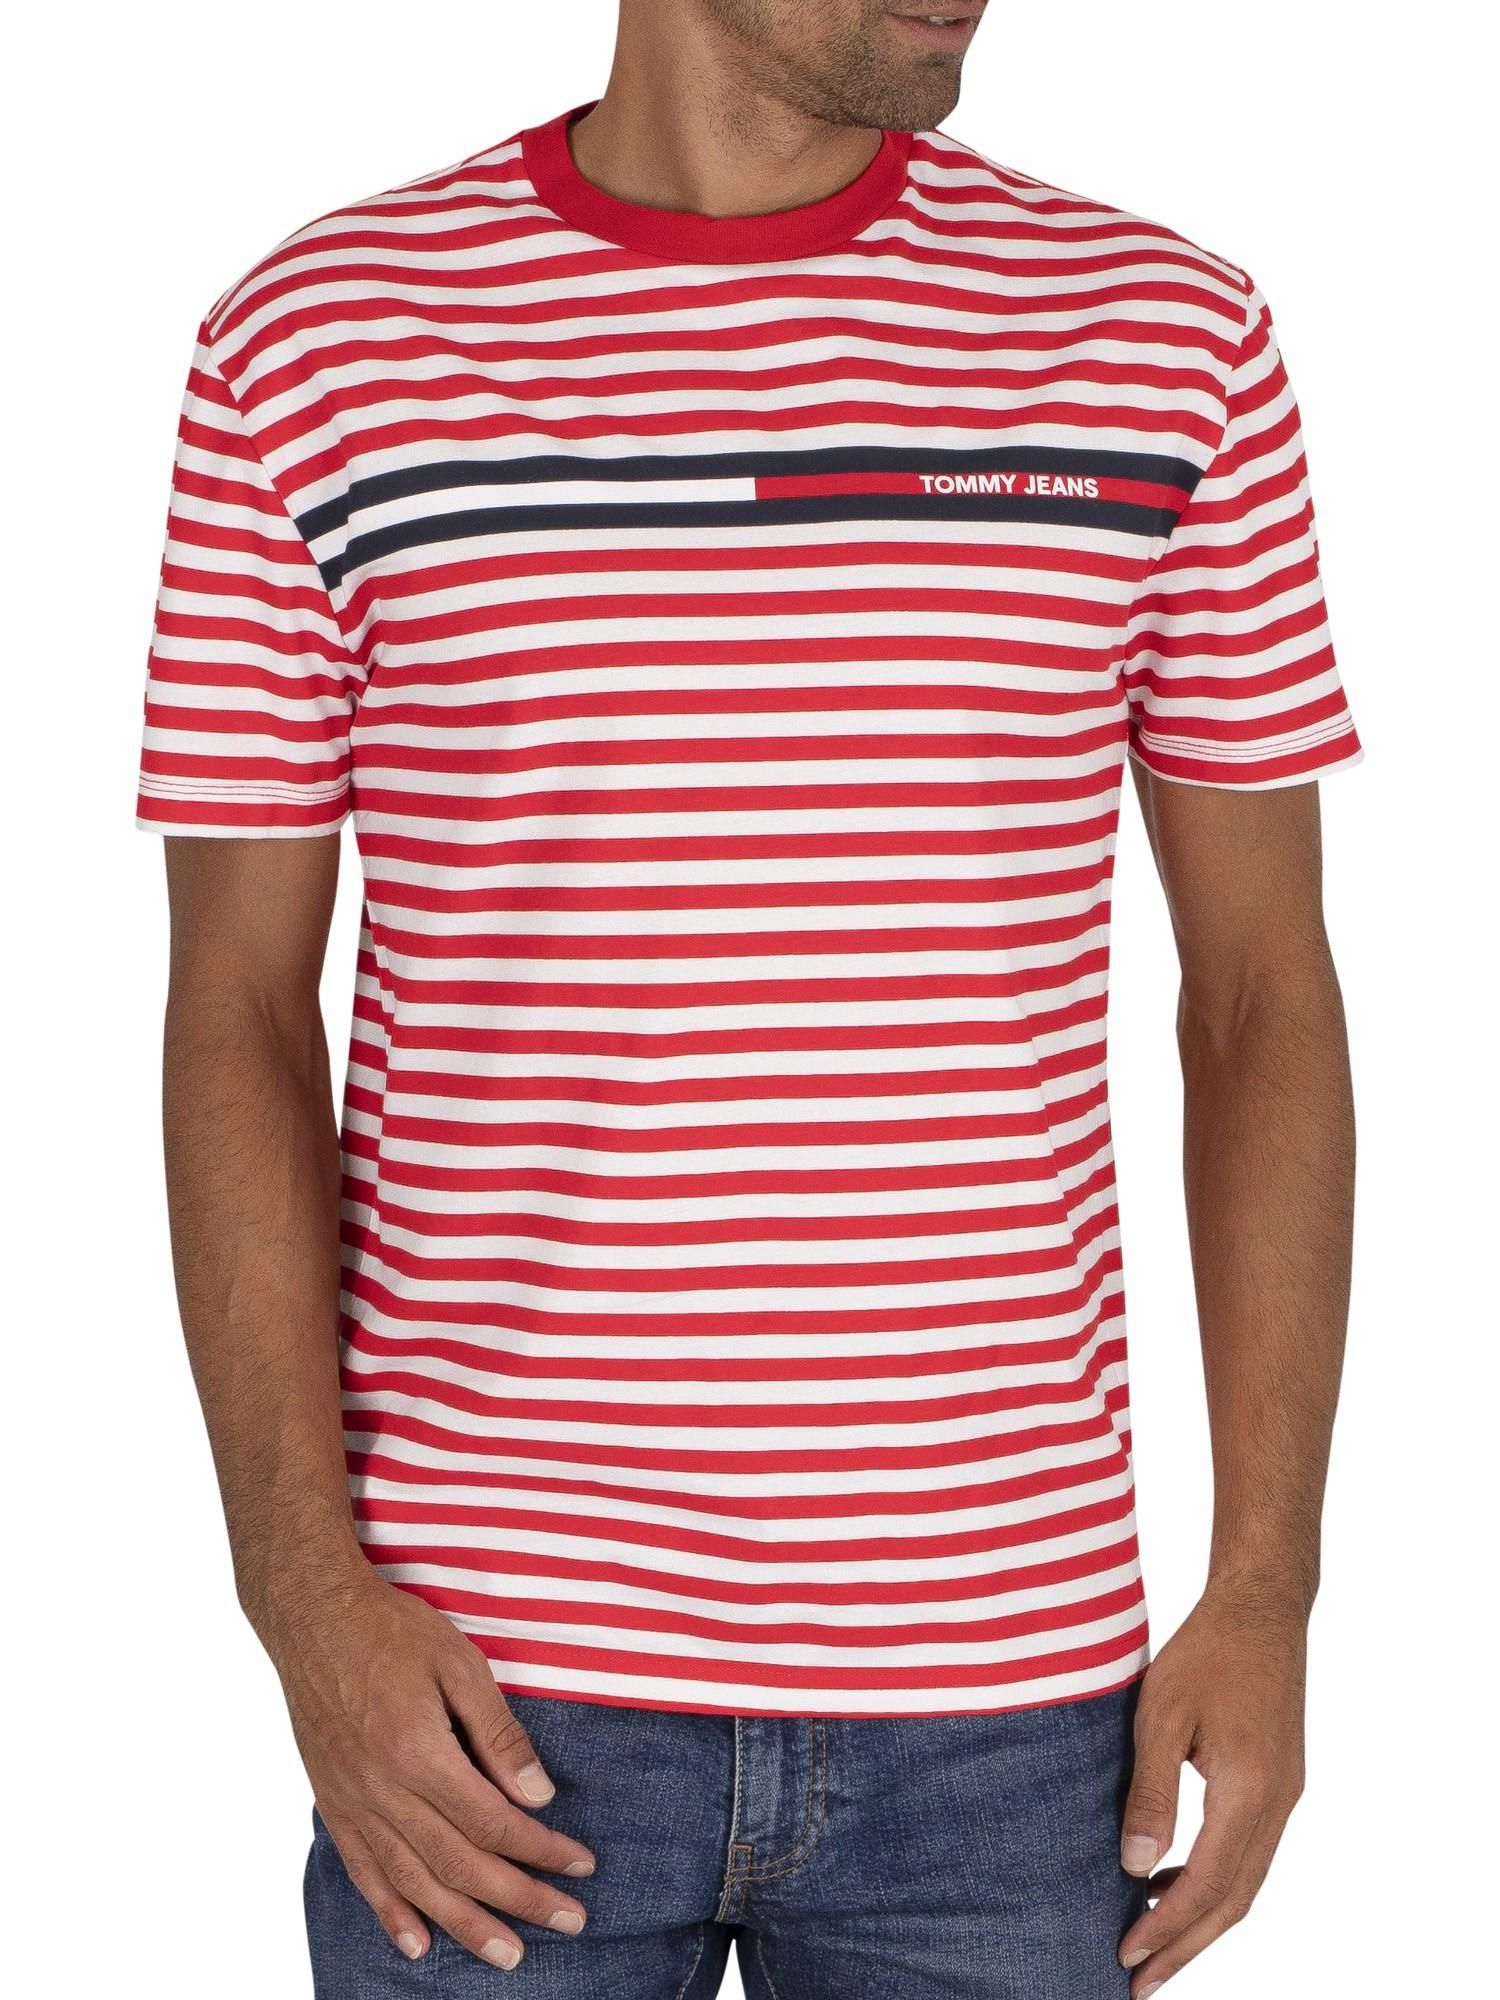 Tommy Hilfiger Denim Branded Stripe T-shirt in Red for Men - Lyst